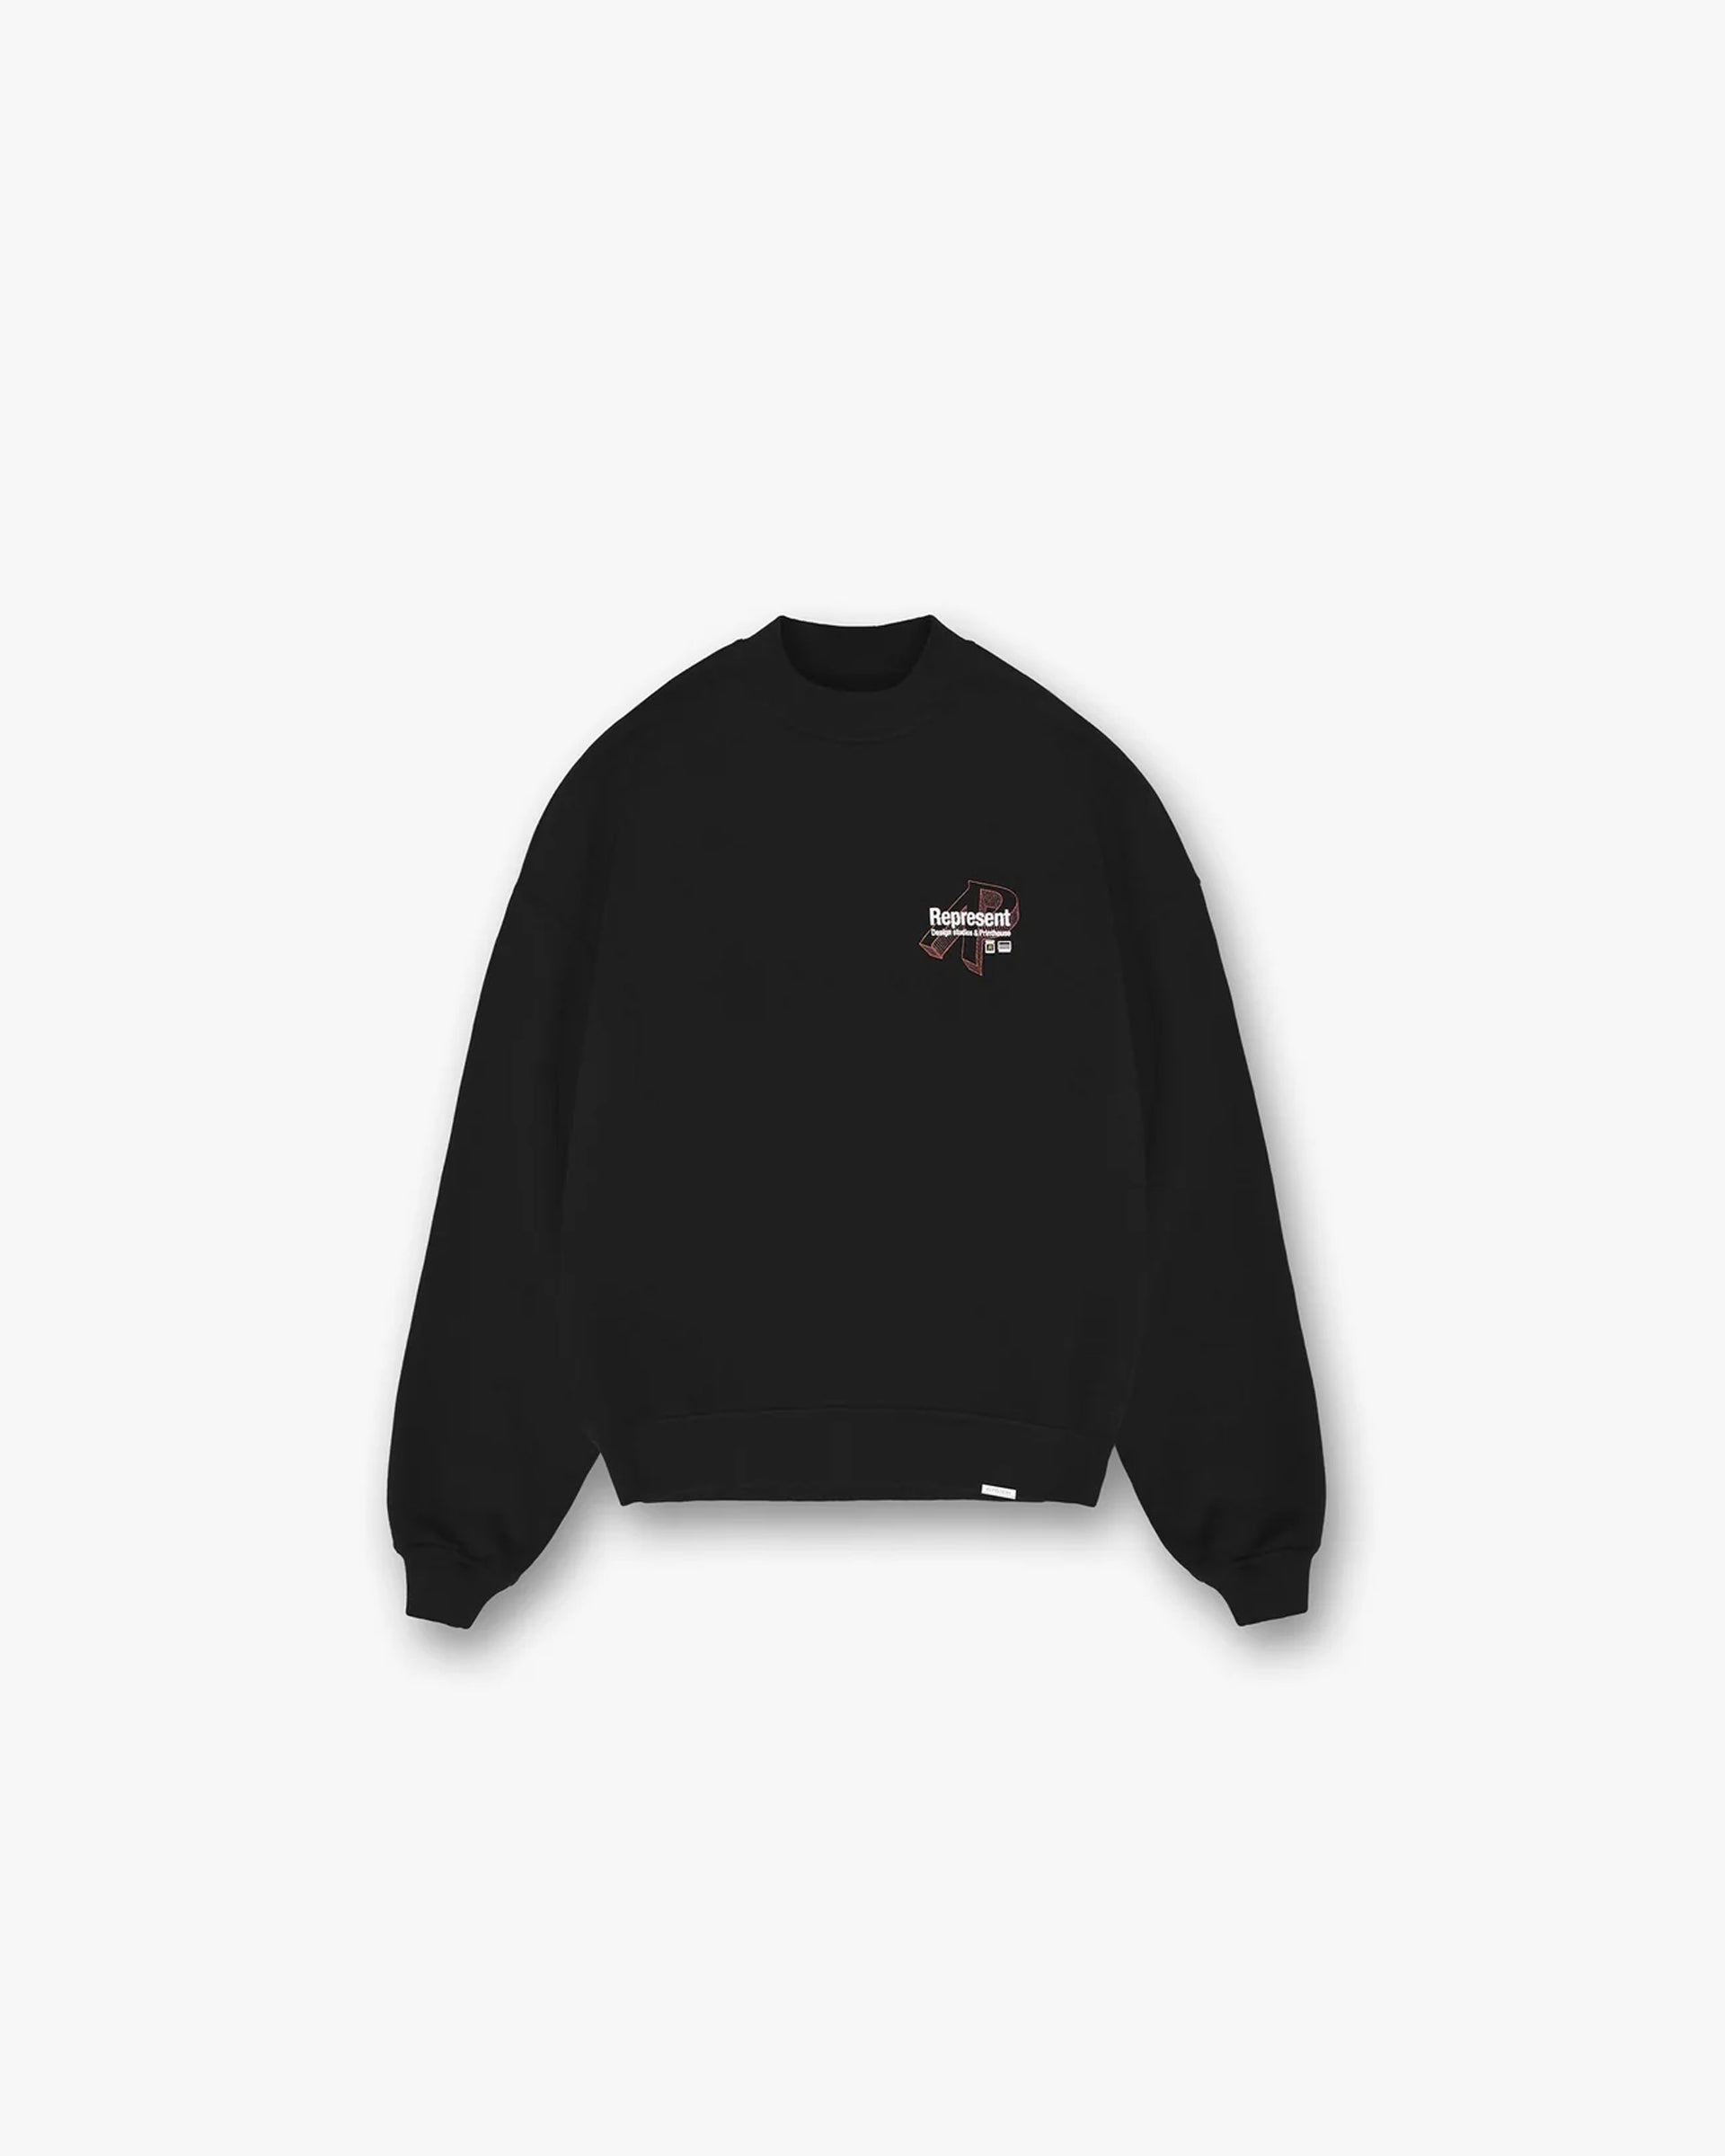 Design Studios Sweater | Black Sweaters PRE-SS23 | Represent Clo